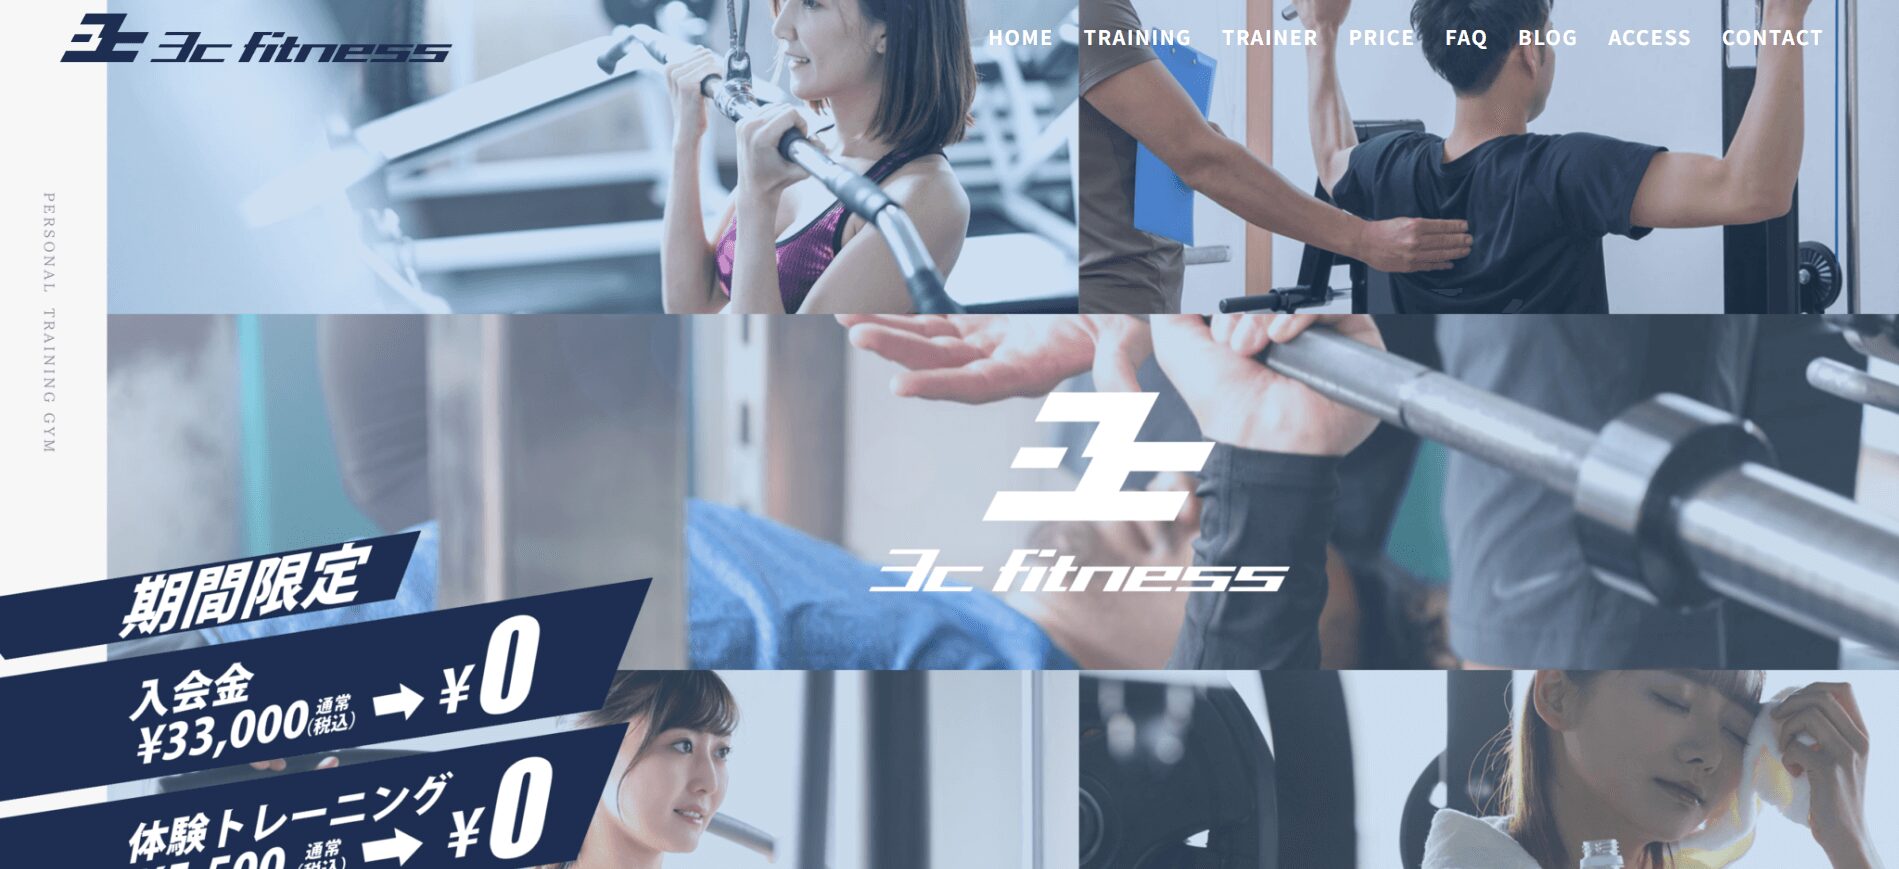 3c fitness 板橋店